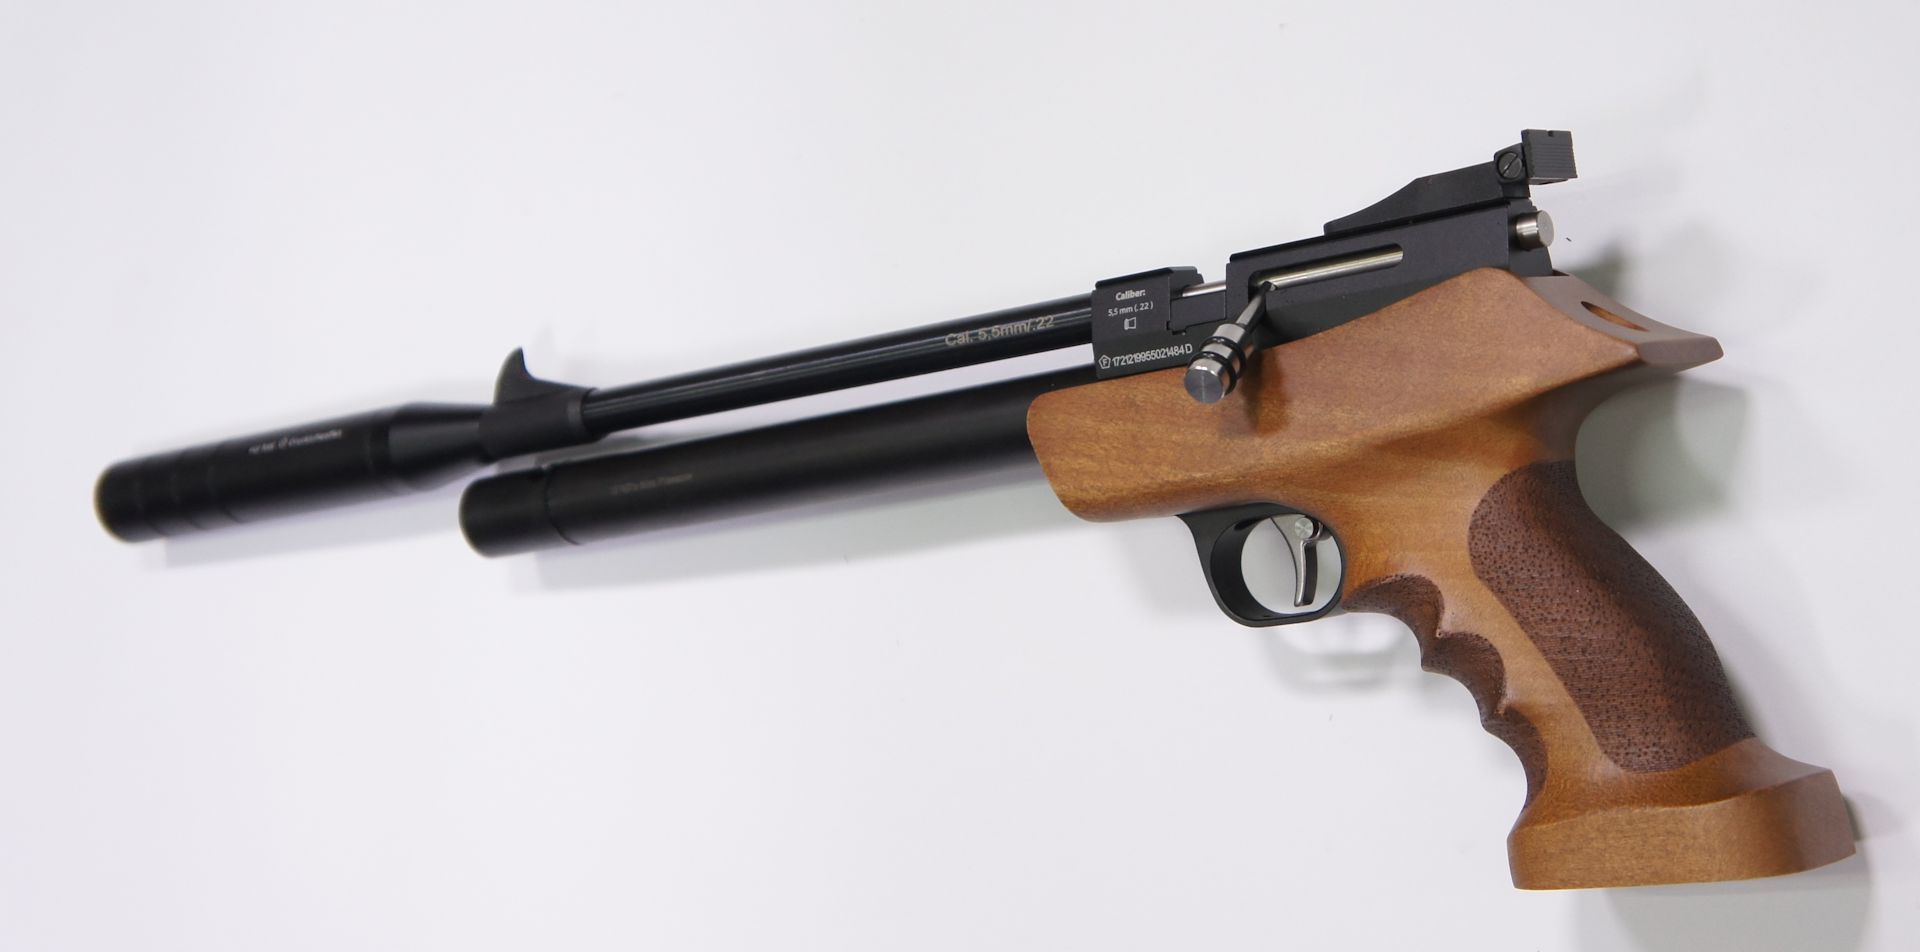 Luftpistole Diana Bandit im Kaliber 4,5mm